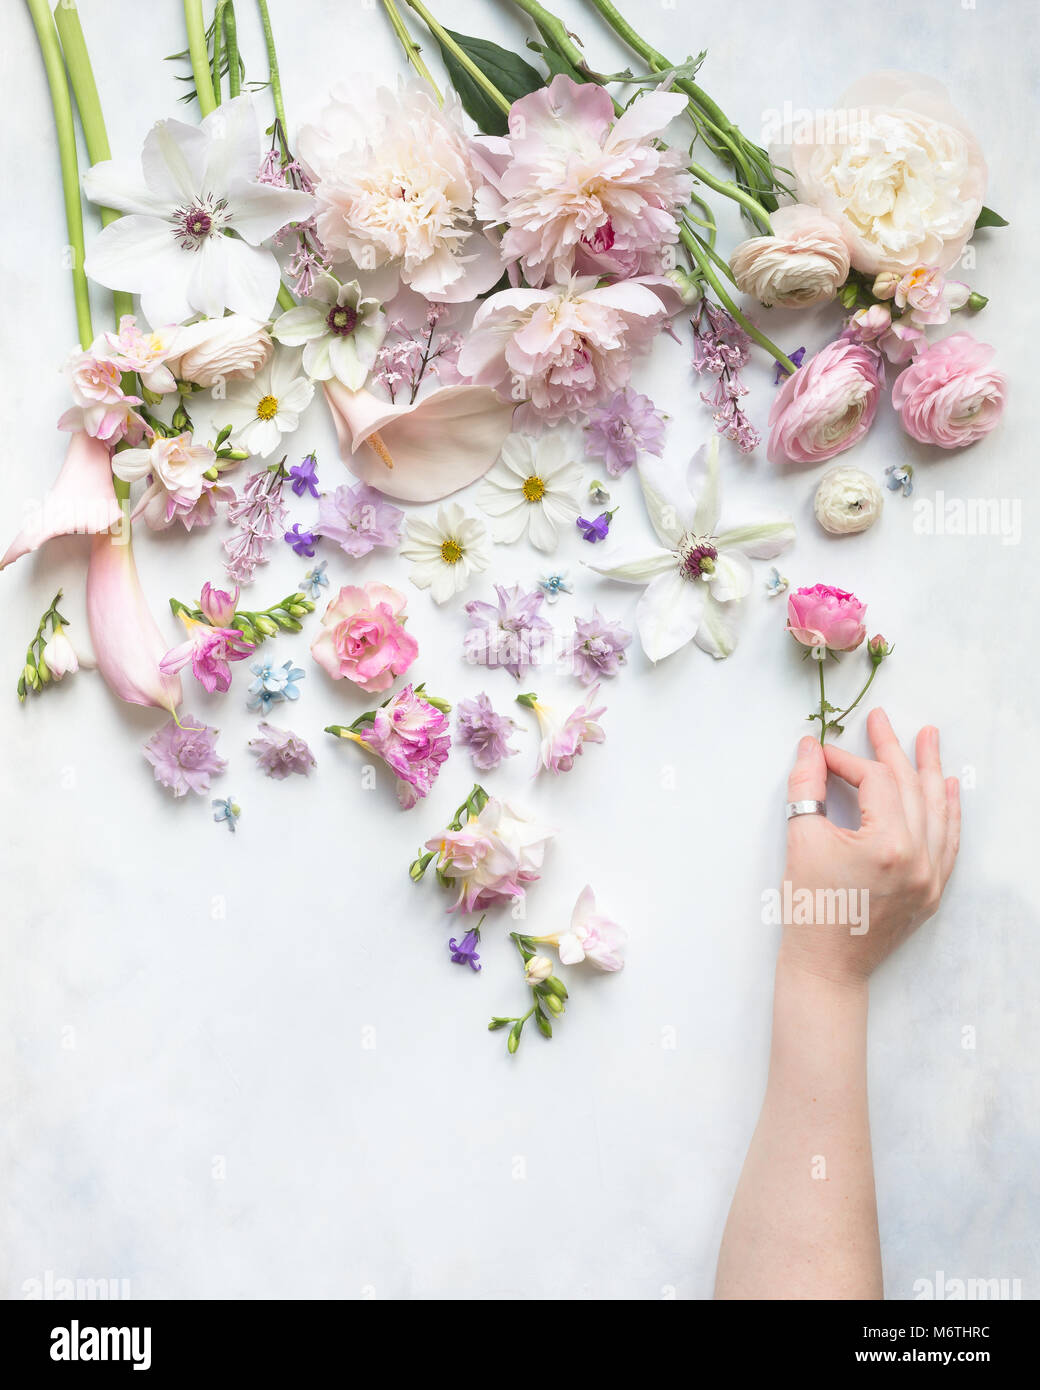 Fresia, peonías, ranunculi, rosas, Cosmos, alcatraces clemátide flores cortadas sobre un fondo blanco y gris pálido, vista desde arriba, con una sola mano Foto de stock